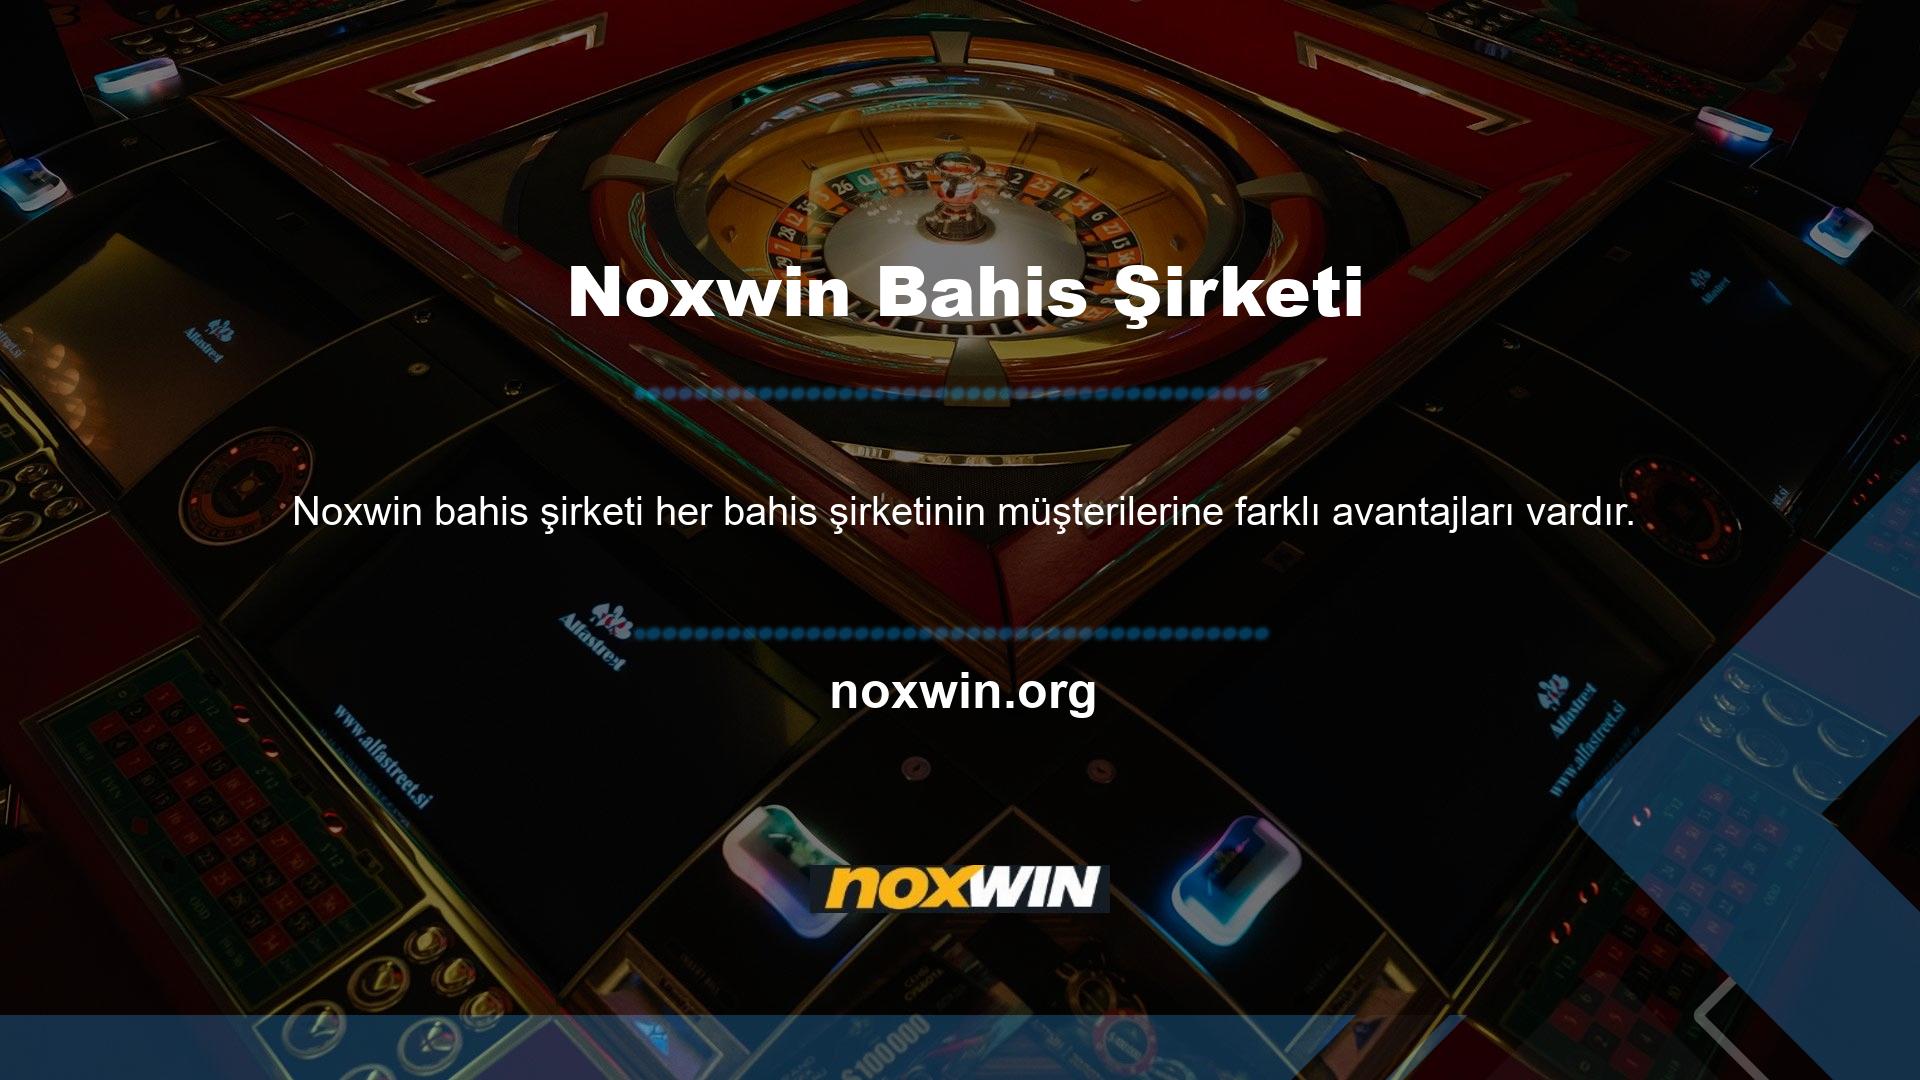 Noxwin ile bonuslar, giriş aktiviteleri, miktarlar ve oyun detayları dahil dikkatinizi çeken net yanıtlar alırsınız